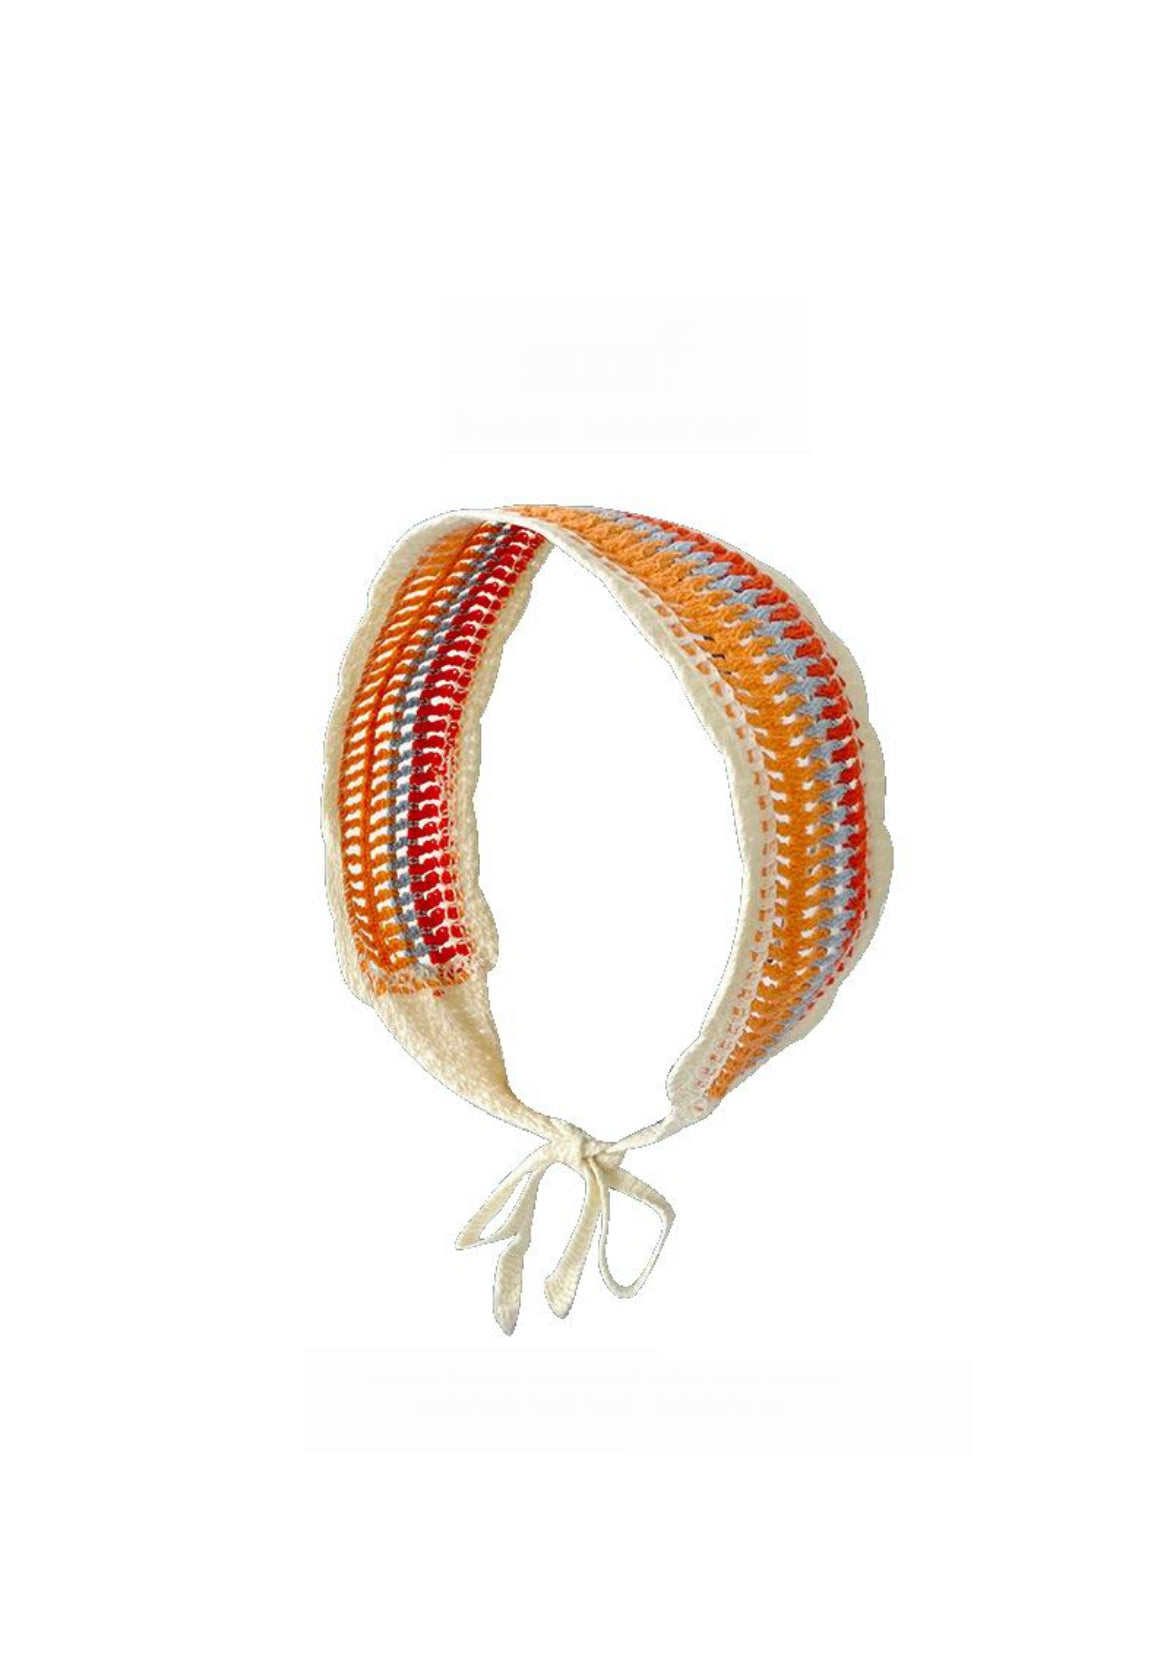 RPZL x GB Striped Crochet Headband